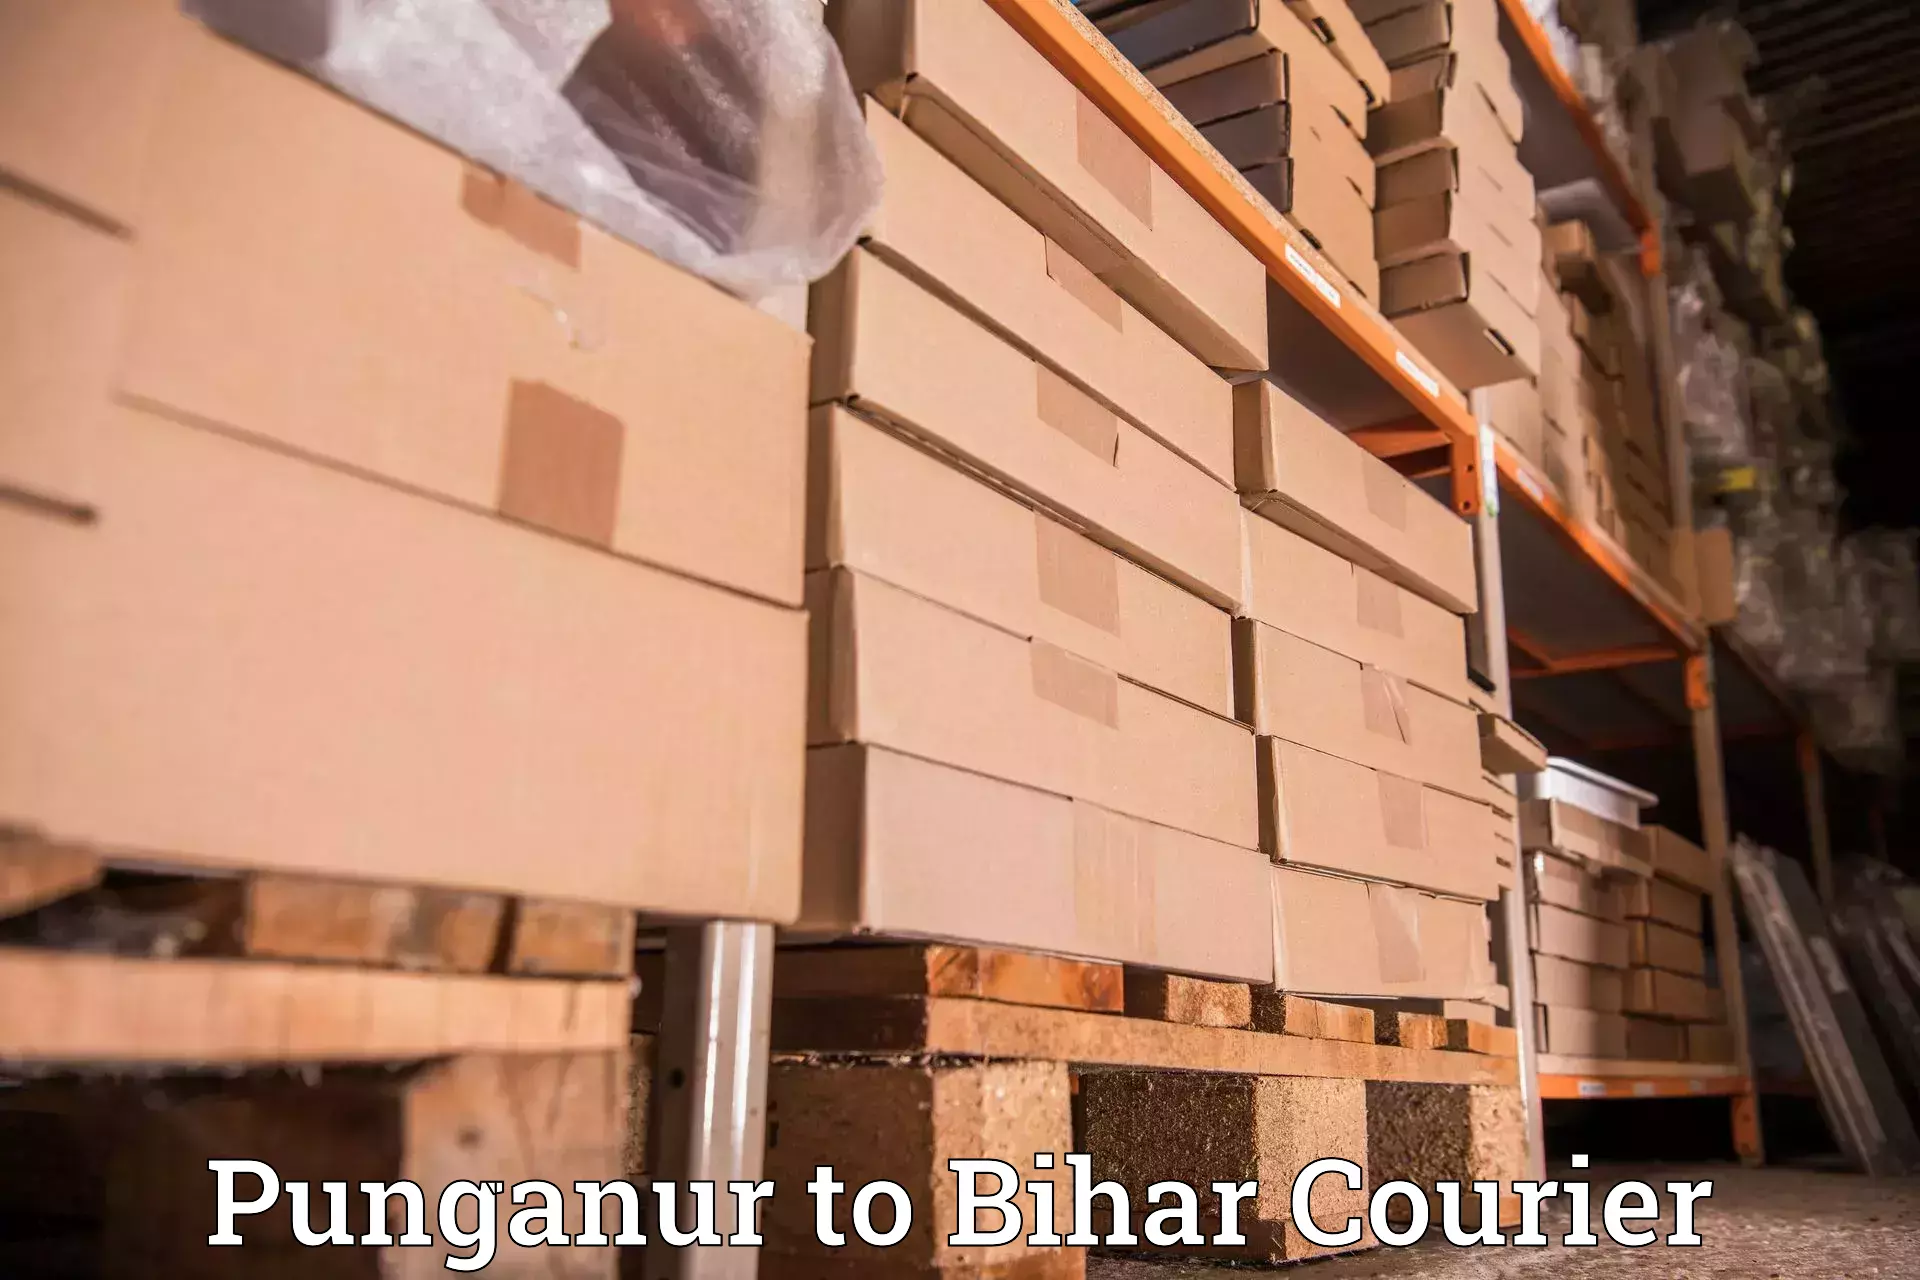 Reliable parcel services Punganur to Aurangabad Bihar